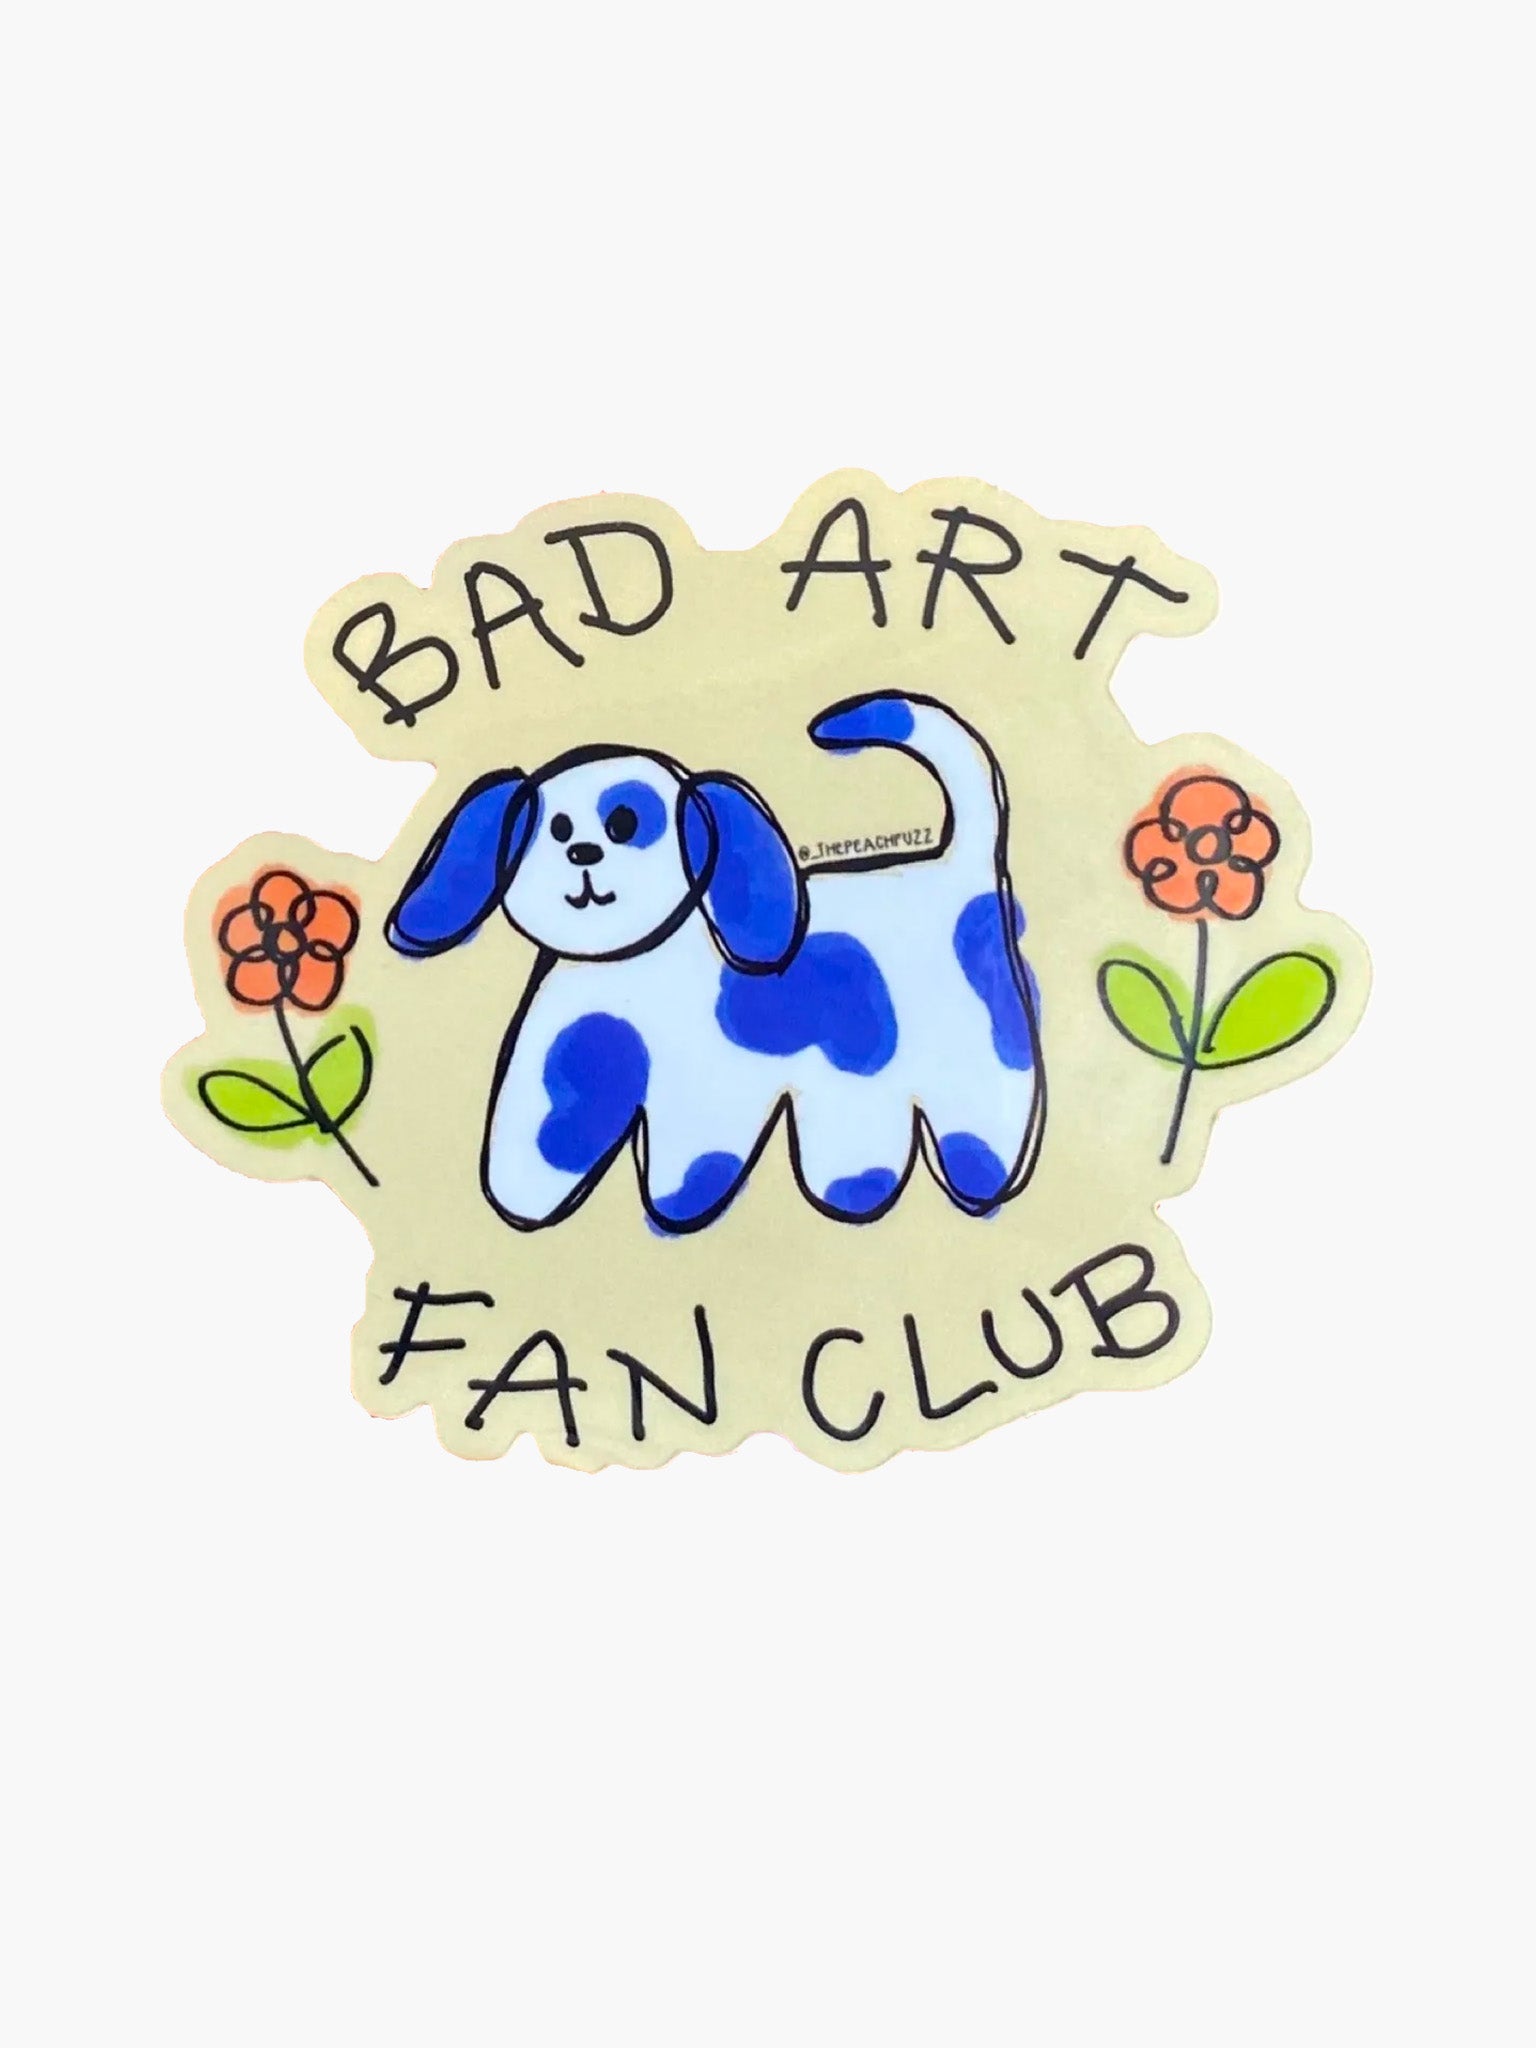 Bad Art Fan Club Sticker